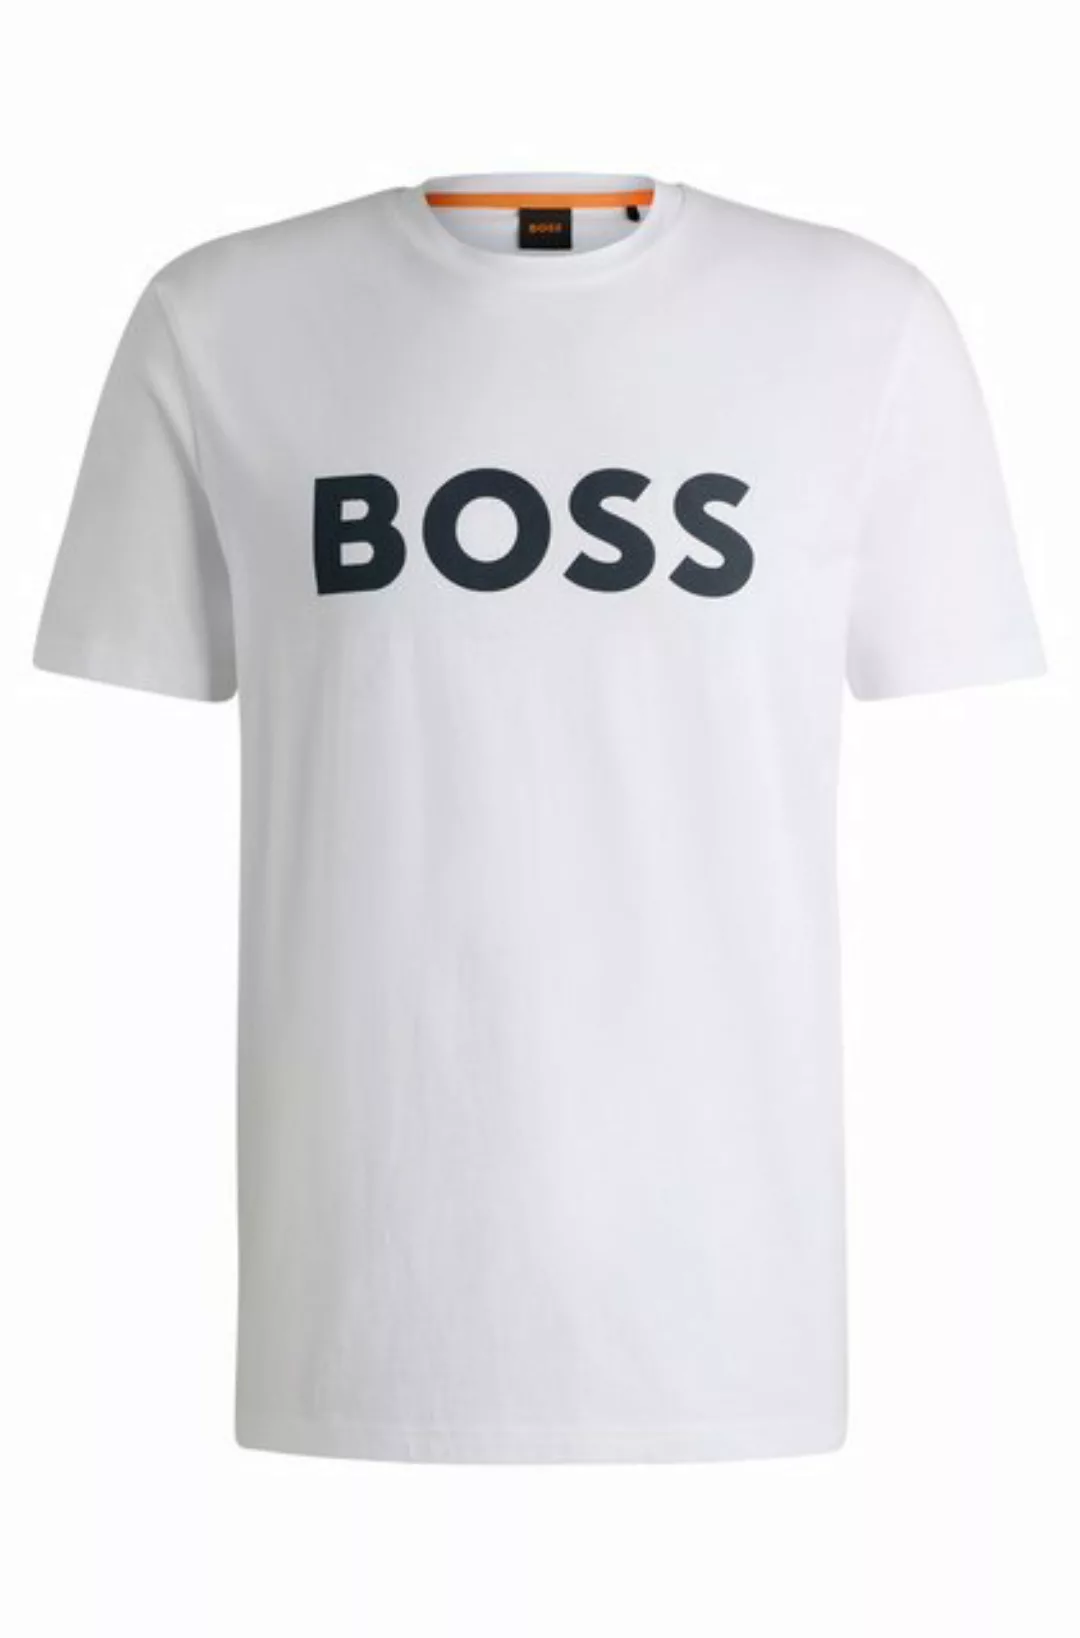 BOSS ORANGE T-Shirt Thinking 1 10246016 01 mit großem BOSS Druck auf der Br günstig online kaufen